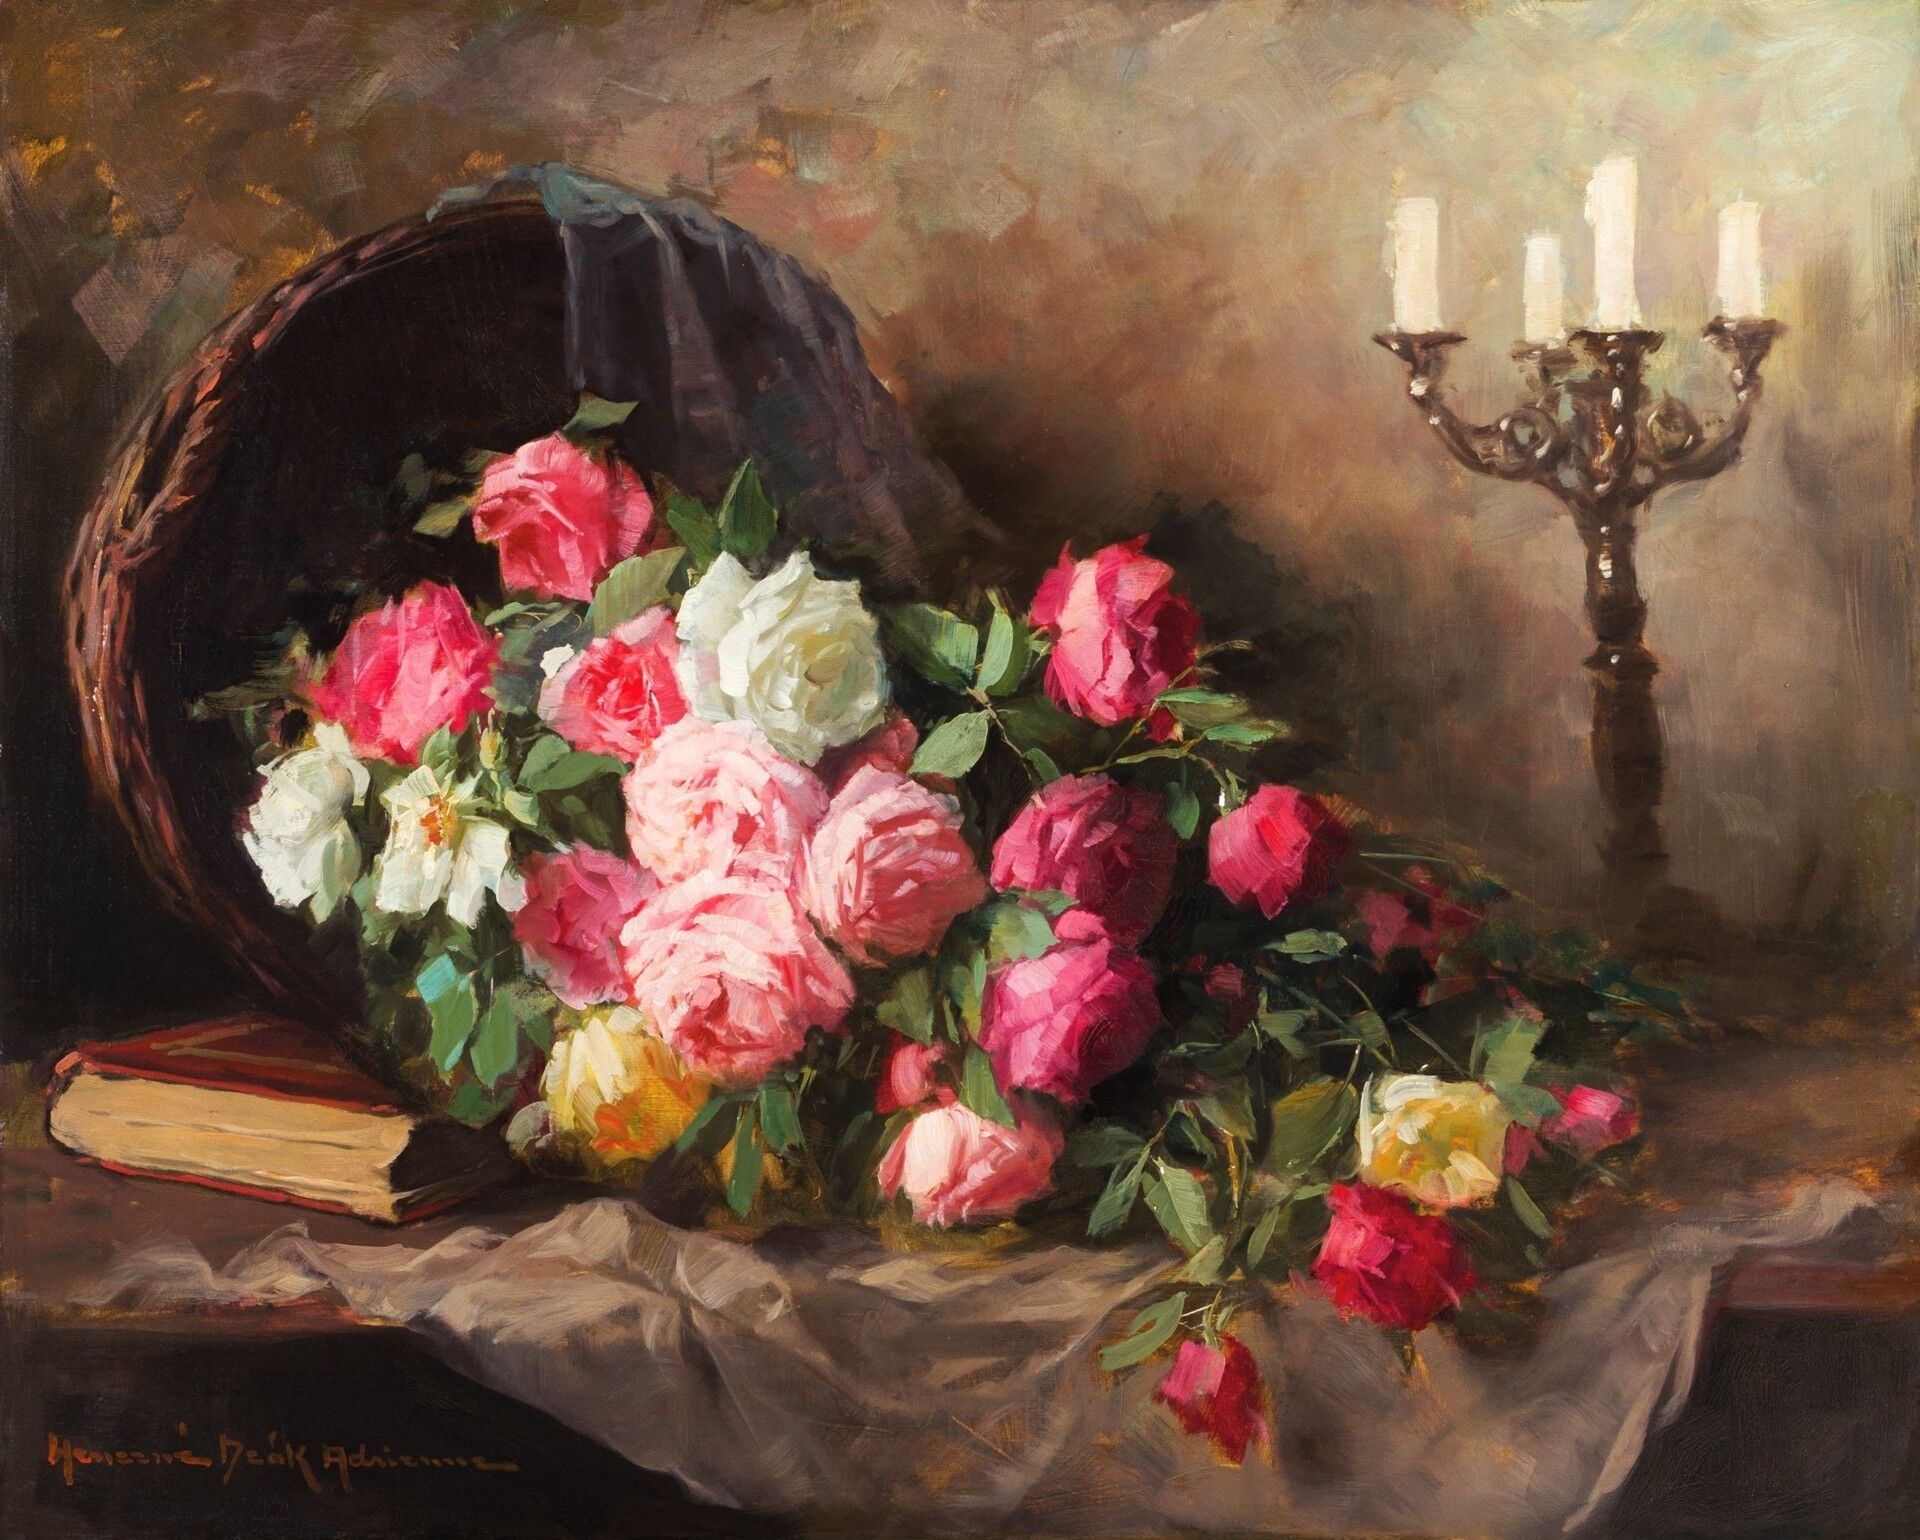 HENCZNÉ DEÁK ADRIENNE  (1890-1956) - Asztali virágcsendélet gyertyatartóval